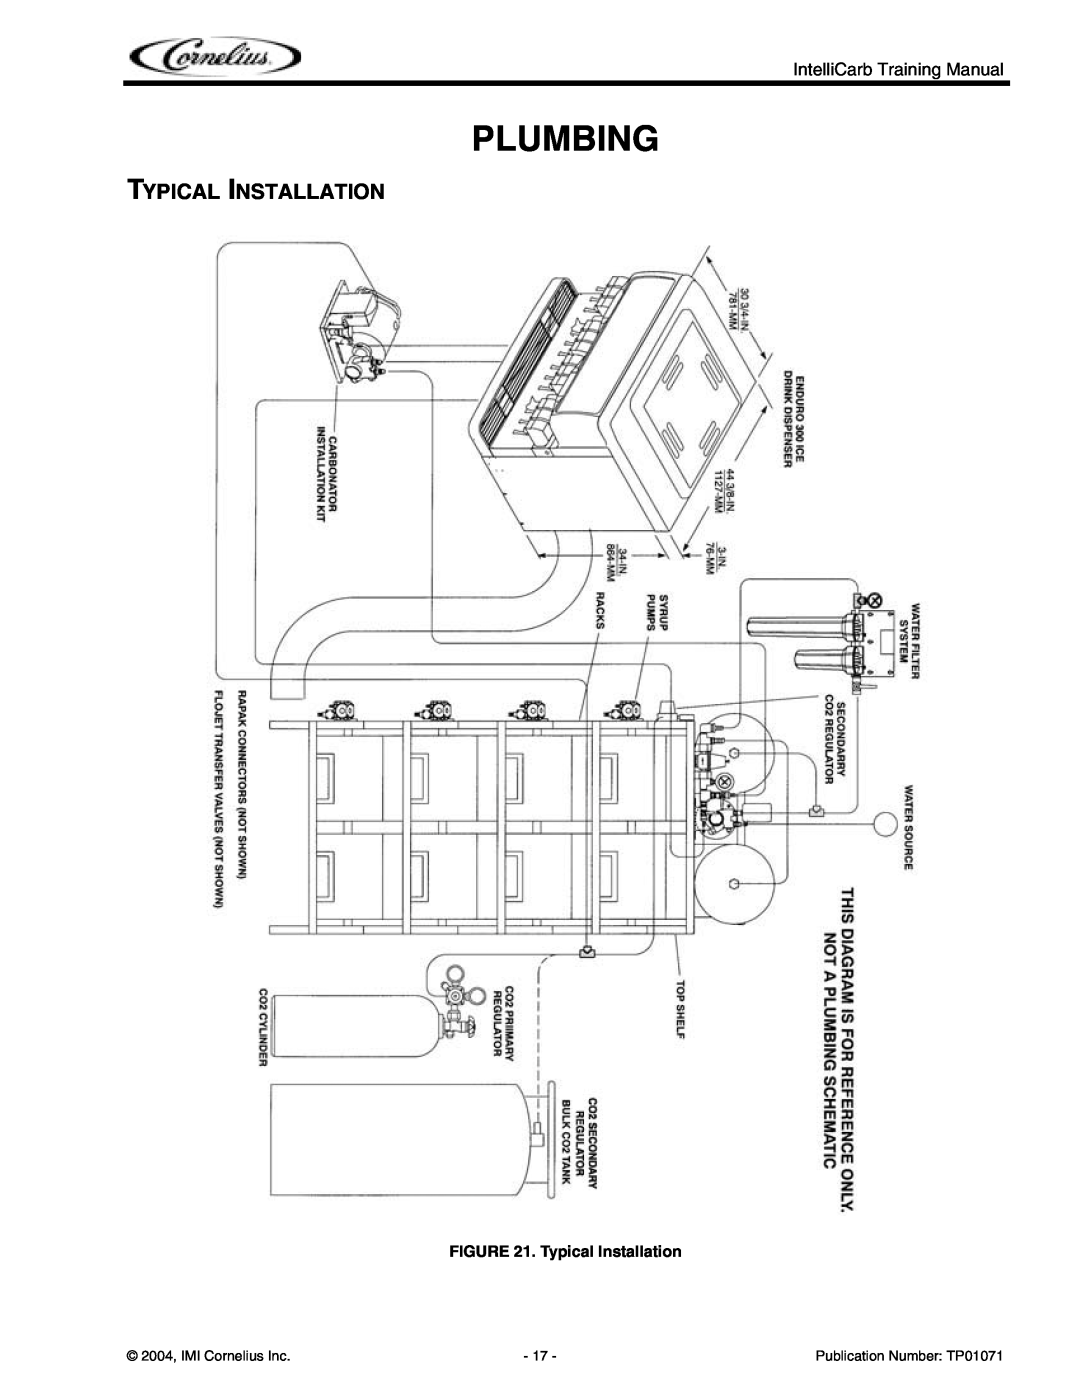 Cornelius Cold Beverage Dispenser Plumbing, Typical Installation, 2004, IMI Cornelius Inc, Publication Number TP01071 